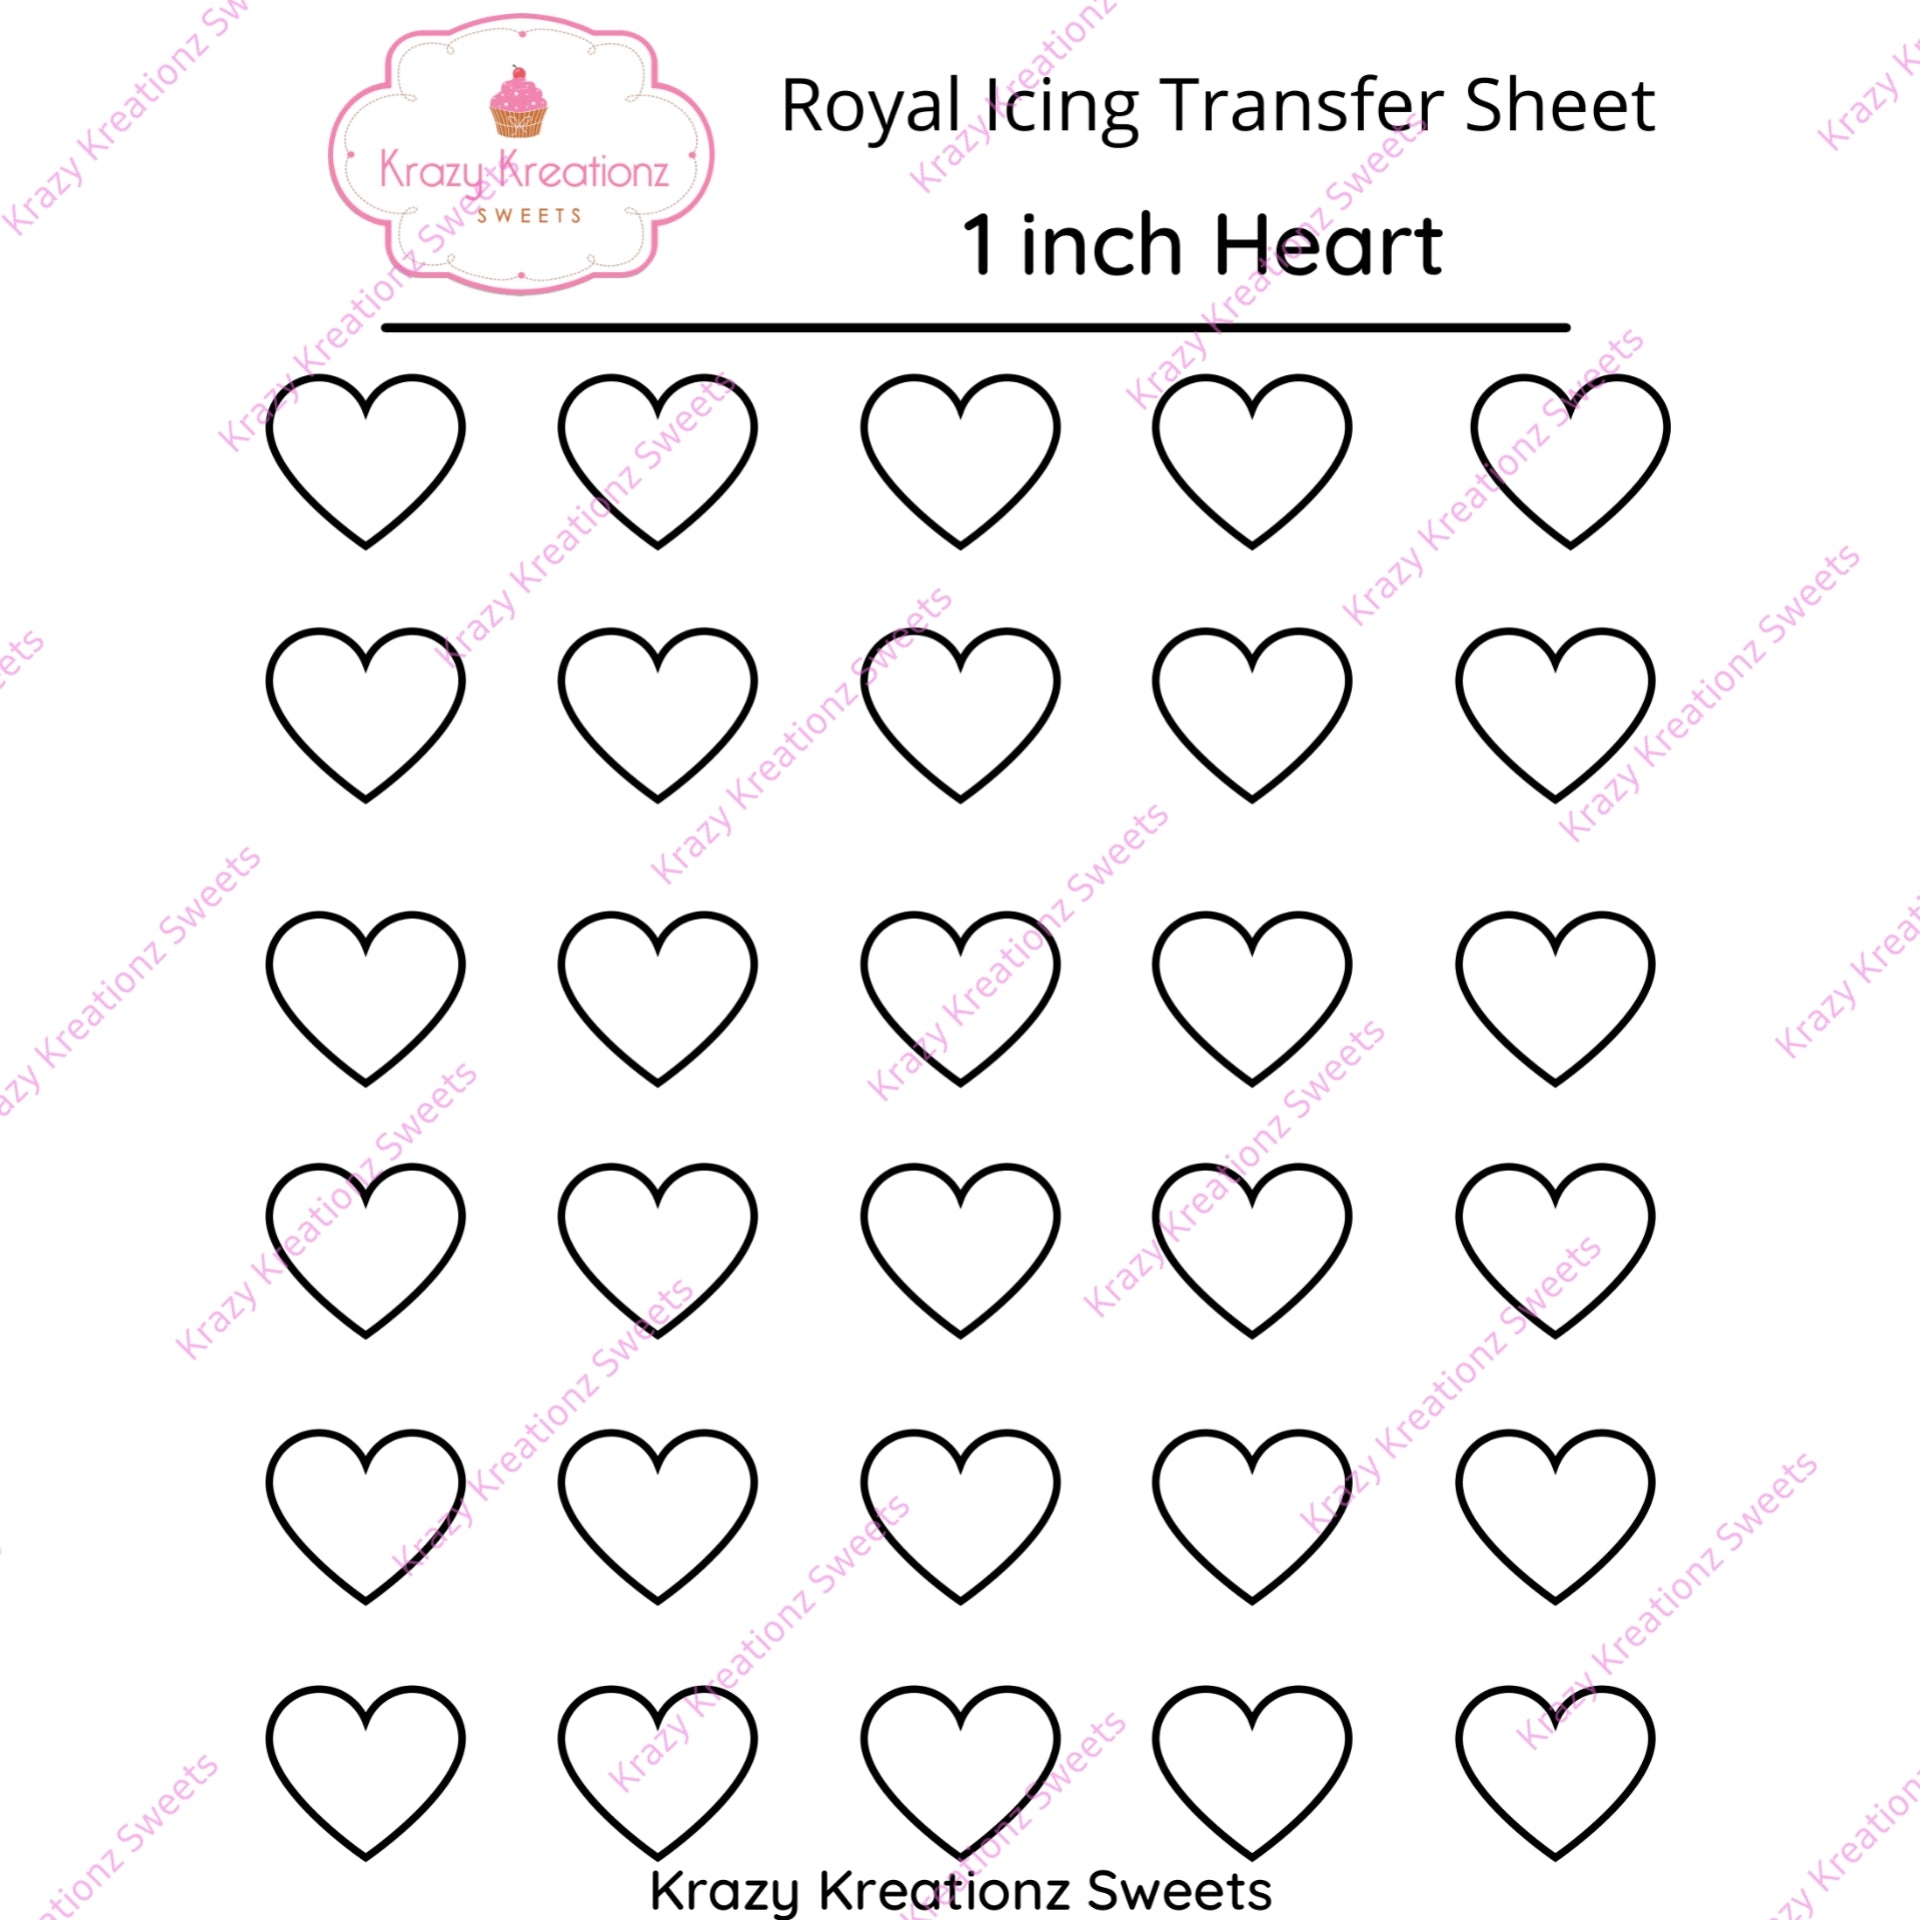 1 inch Heart Transfer Sheet